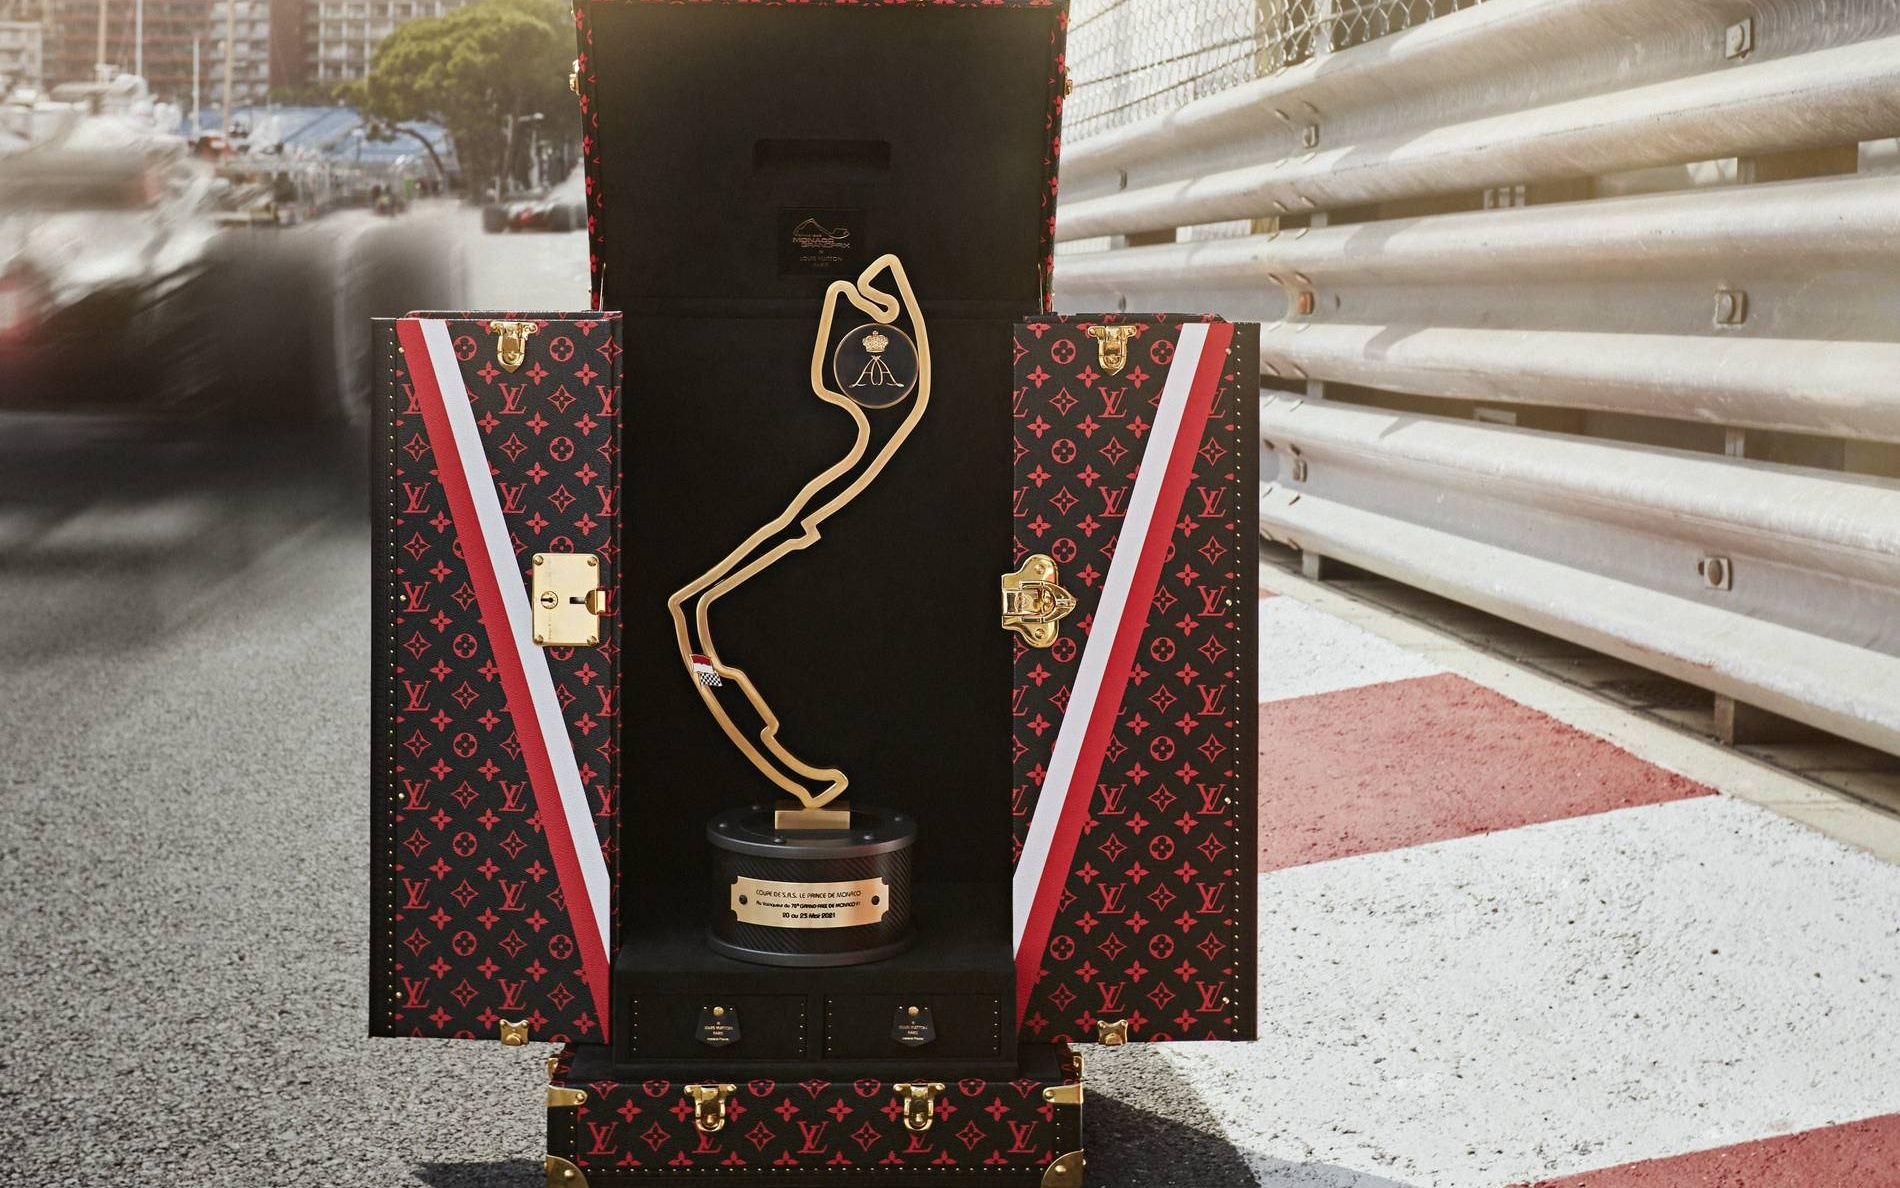 Monaco Sécurité Privée & Louis Vuitton GP F1 2021 - Monaco